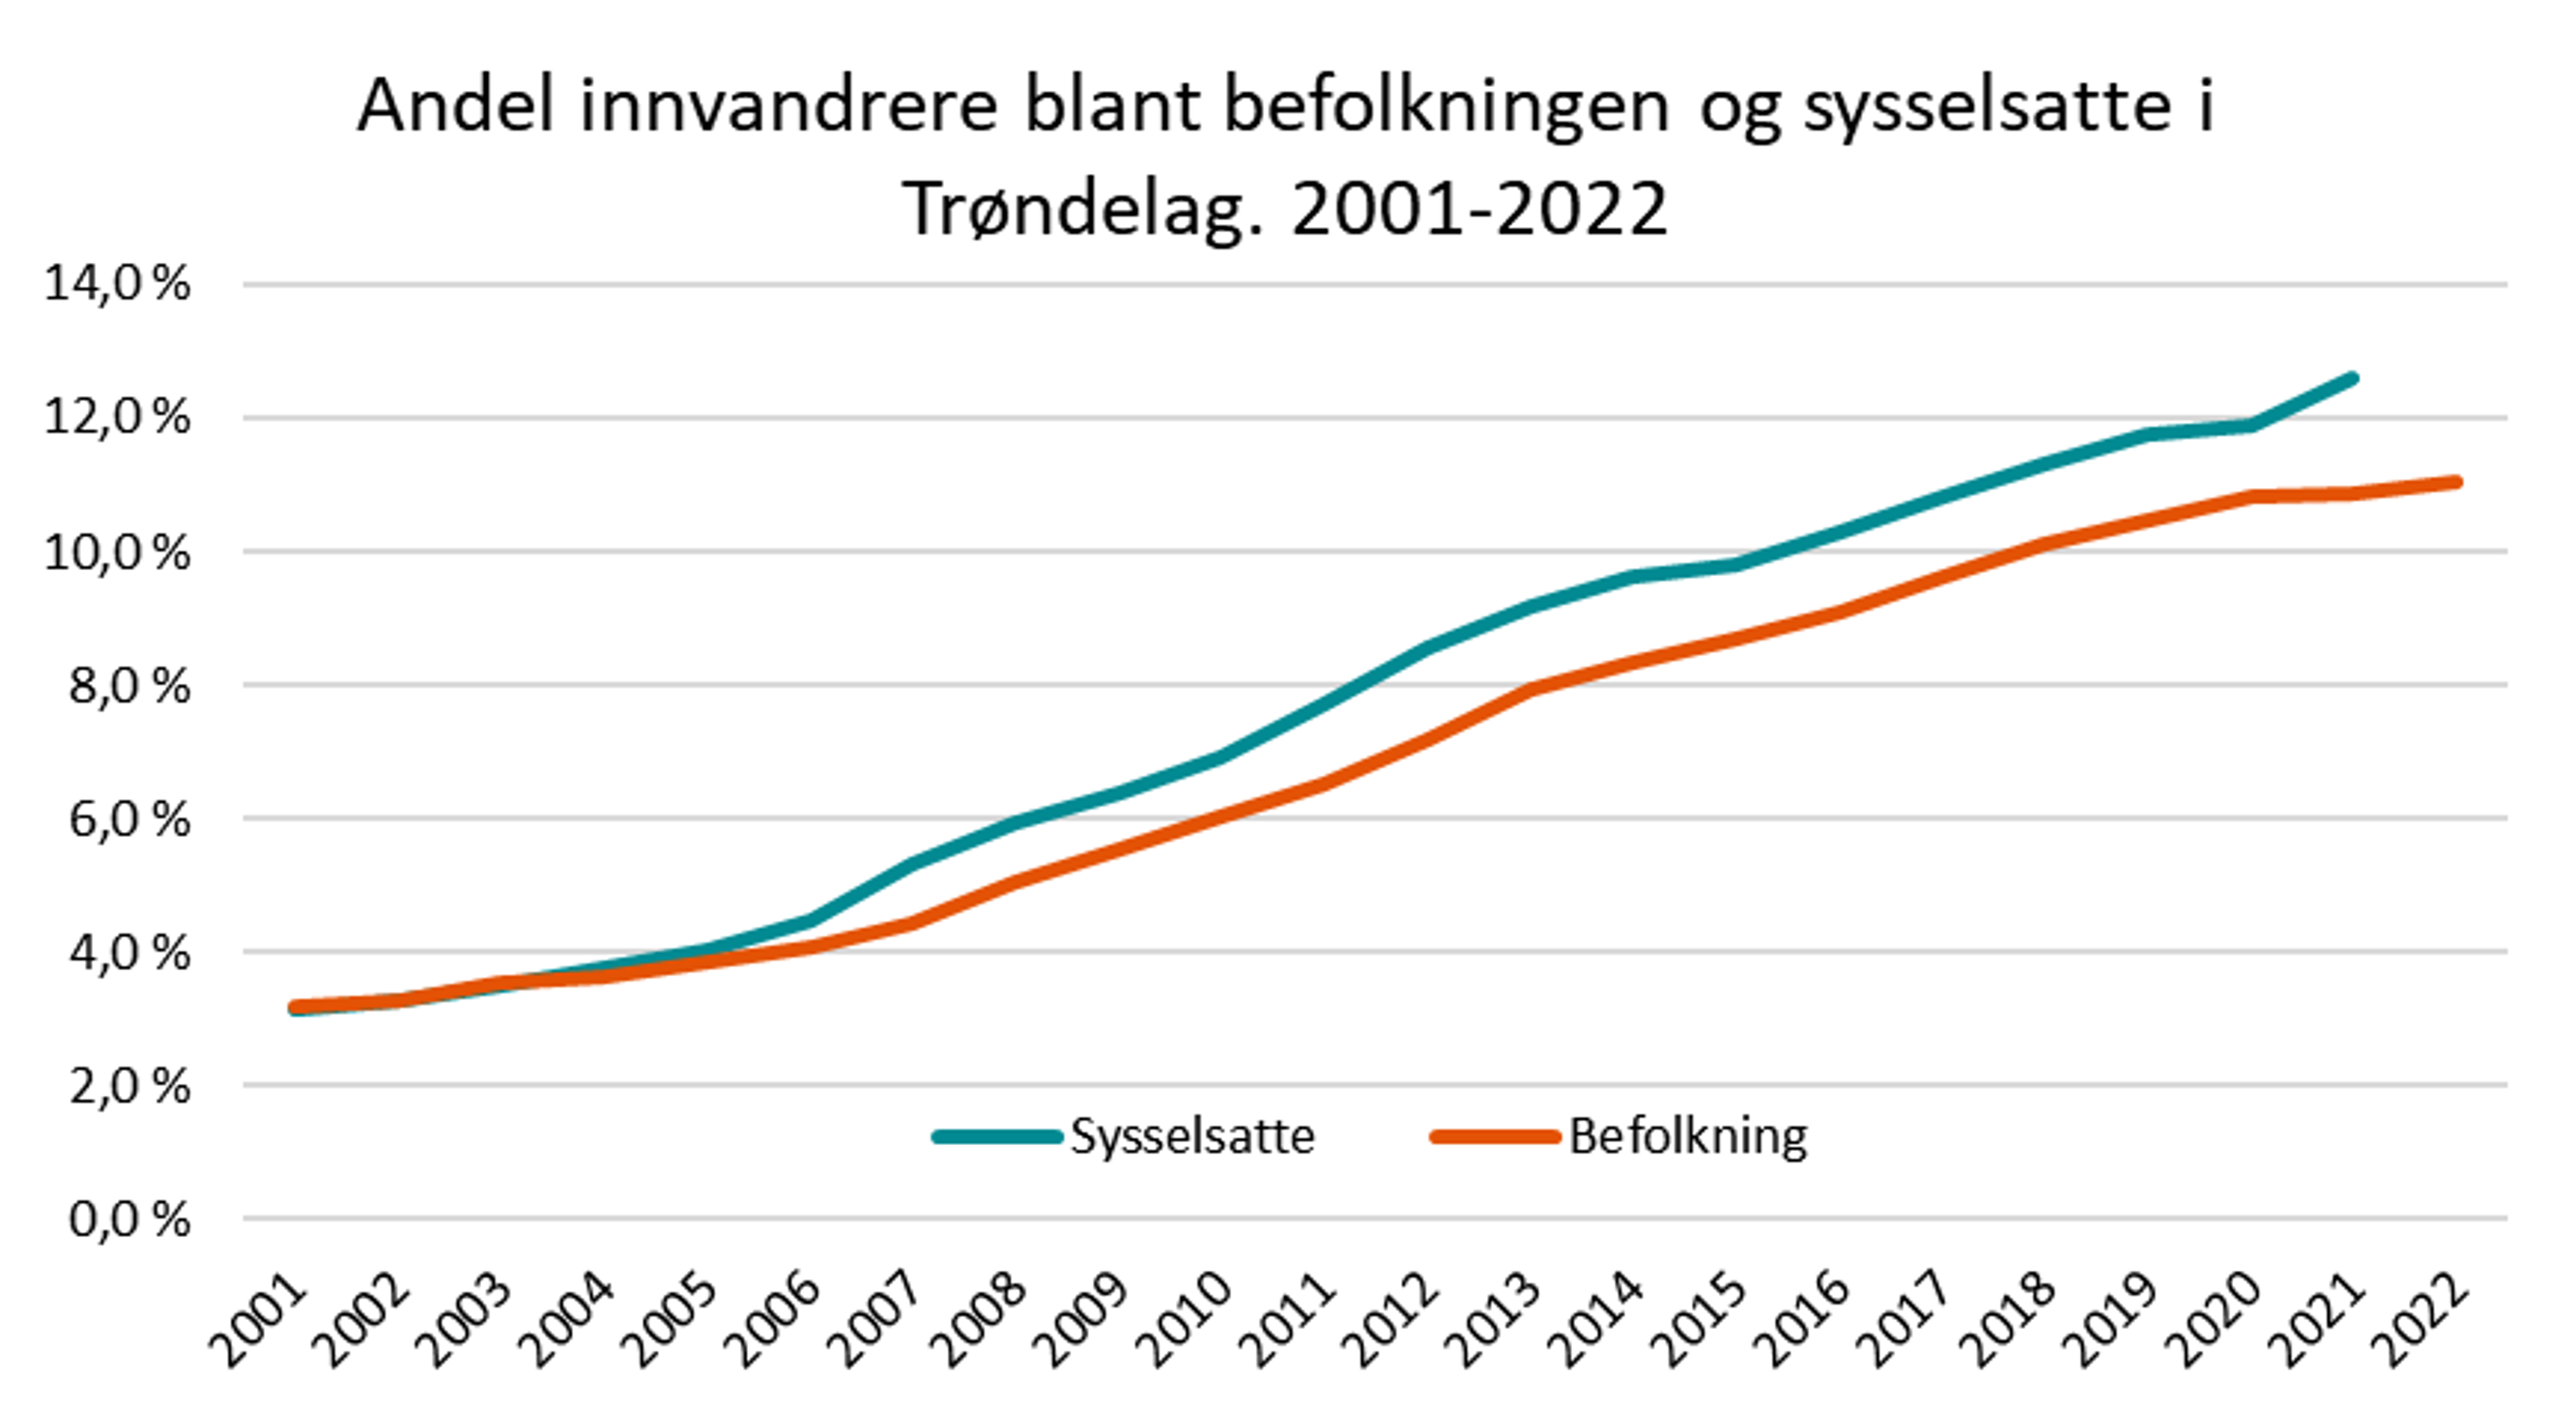 Andel innvandrere blant befolkningen og sysselsatte i Trøndelag. 2001-2022